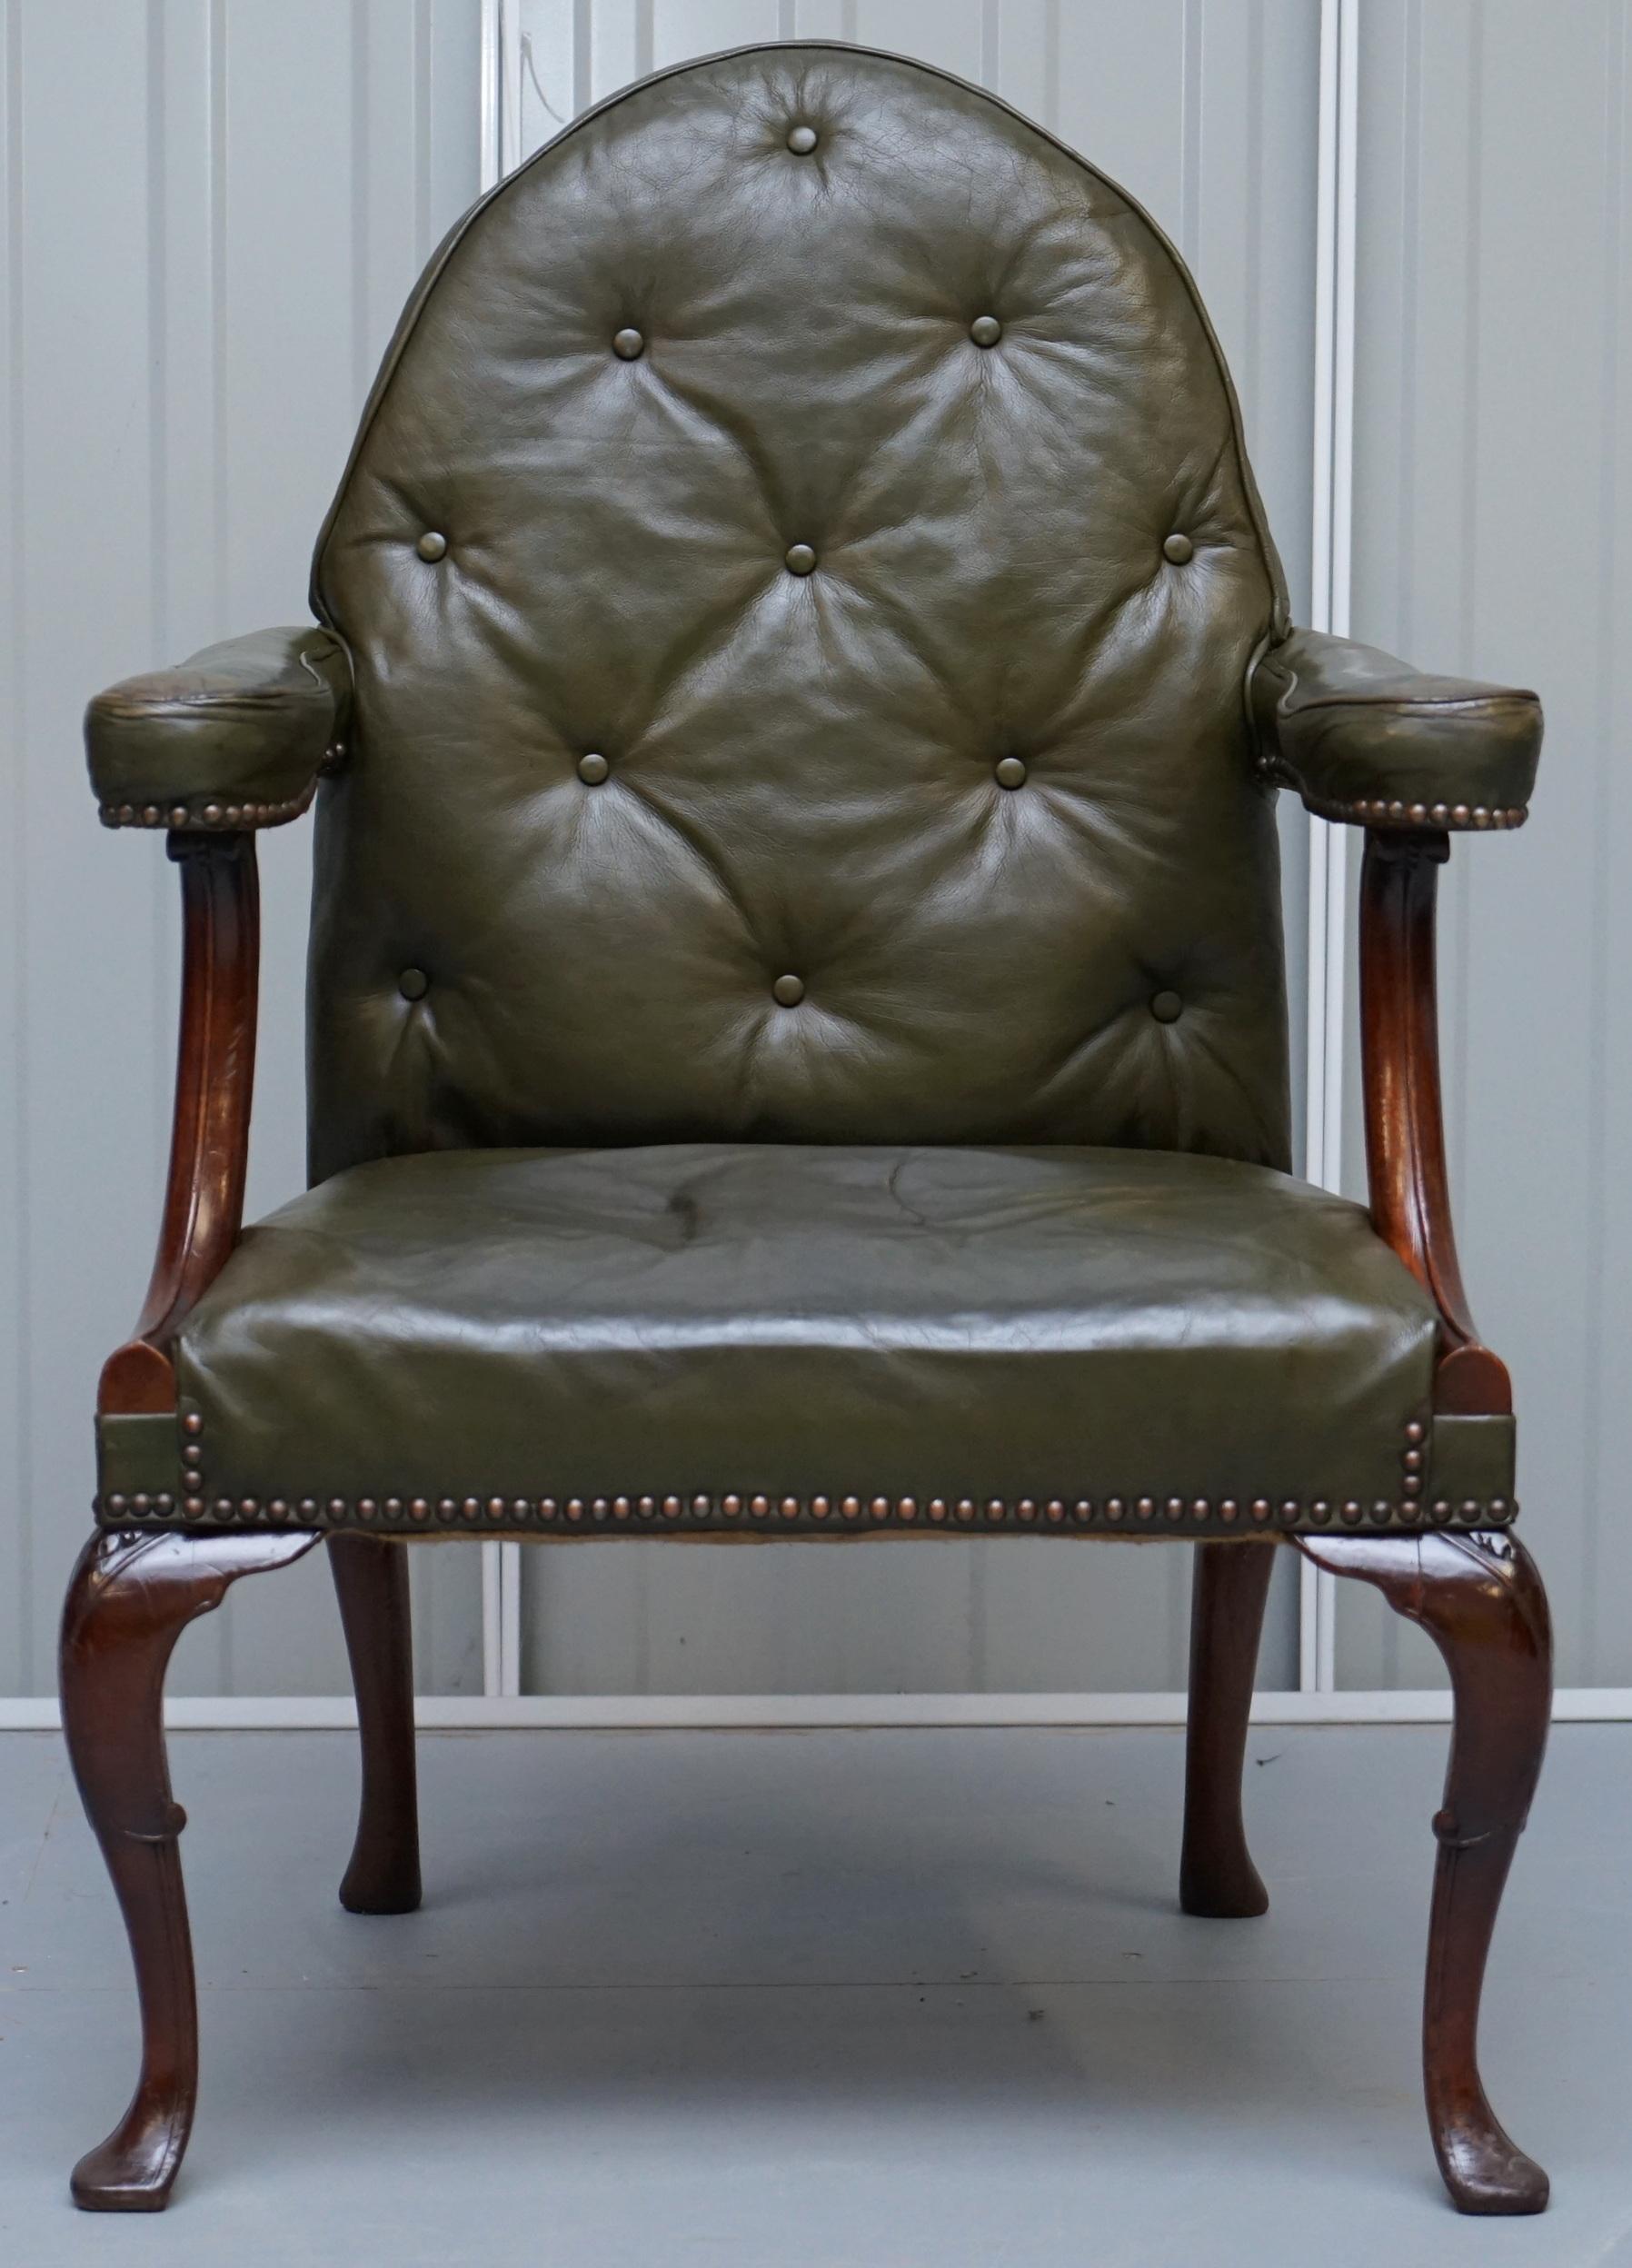 Nous sommes ravis d'offrir à la vente ce très rare fauteuil de style néo-gothique irlandais d'origine, datant d'environ 1800, avec dossier en forme de cloche

Un fauteuil de collection et décoratif de très bonne qualité. Il s'inspire des premiers